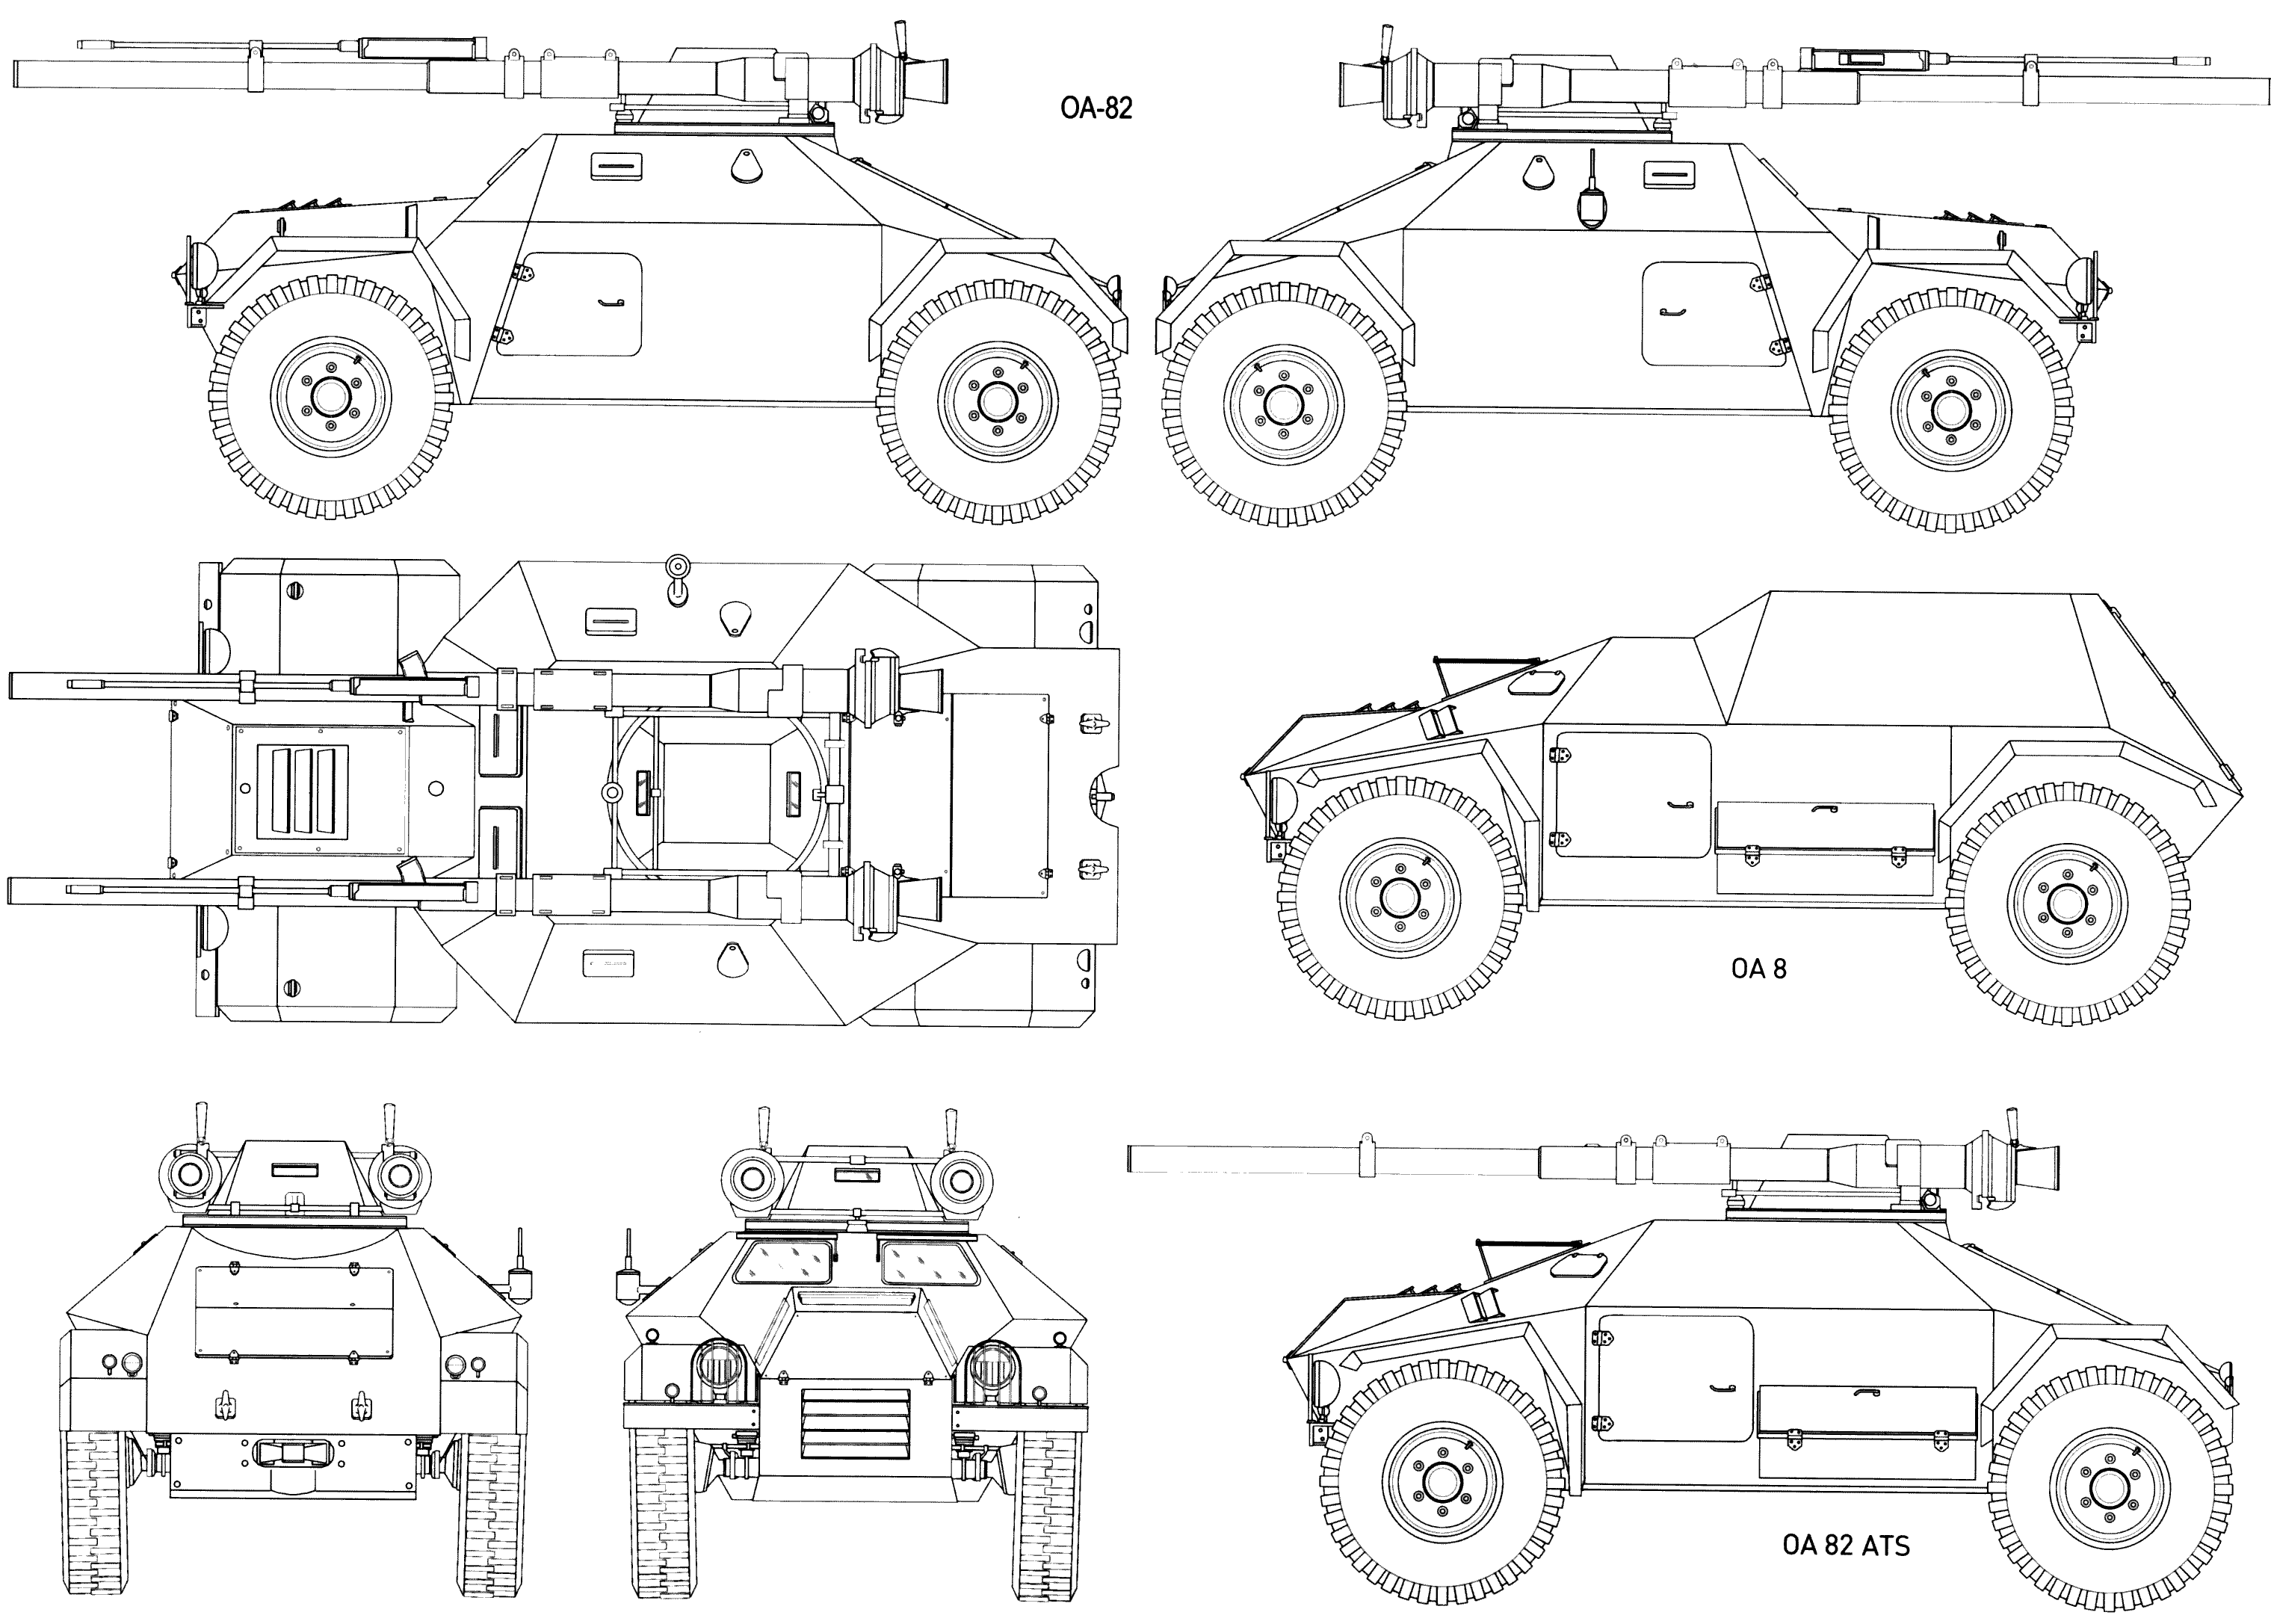 OA-82 Jarmila II blueprint